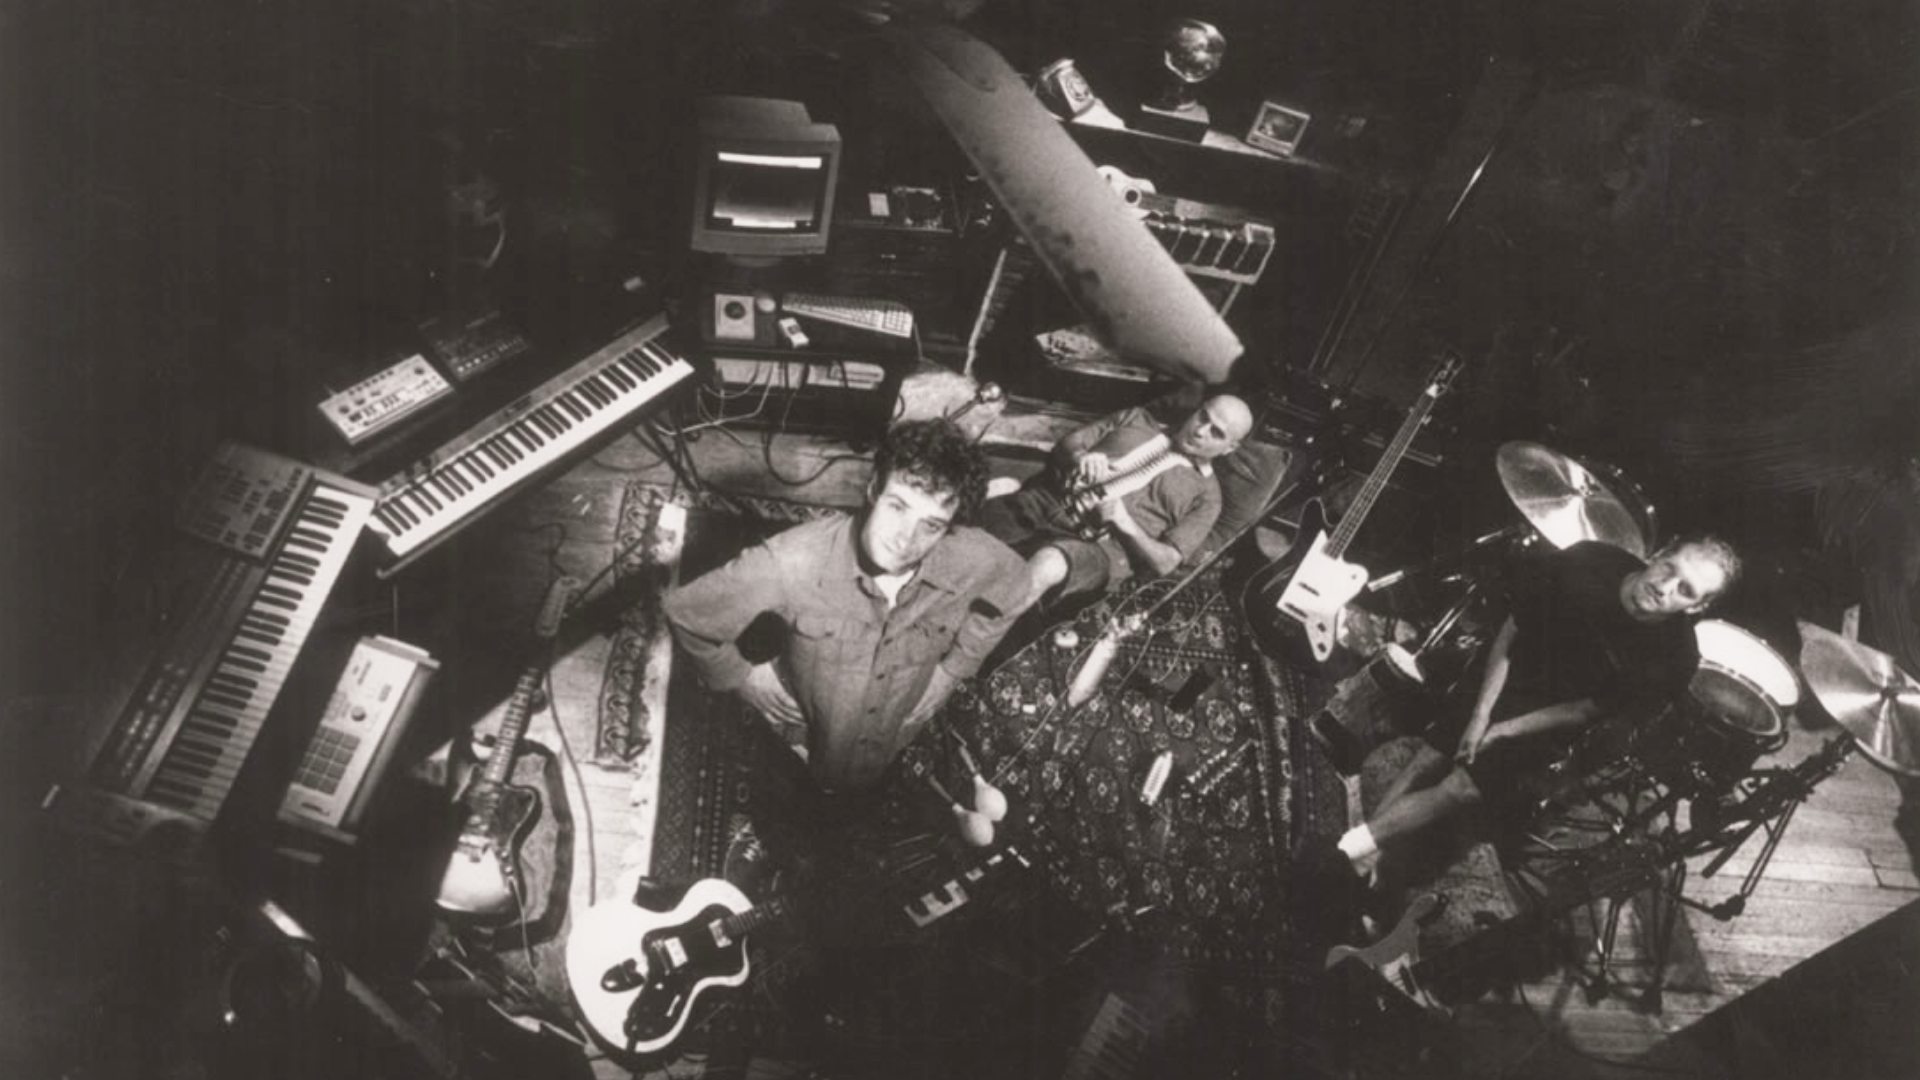 Soda Stereo grabó "Sueño Stereo" entre 1994 y 1995. Buscaban hacer un disco doble, pero no pudieron.